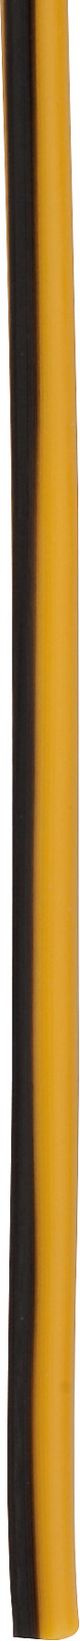 KABEL, 1 Meter 0.75qmm gelb-schwarz (gelbes Kabel mit schwarzem Strich)